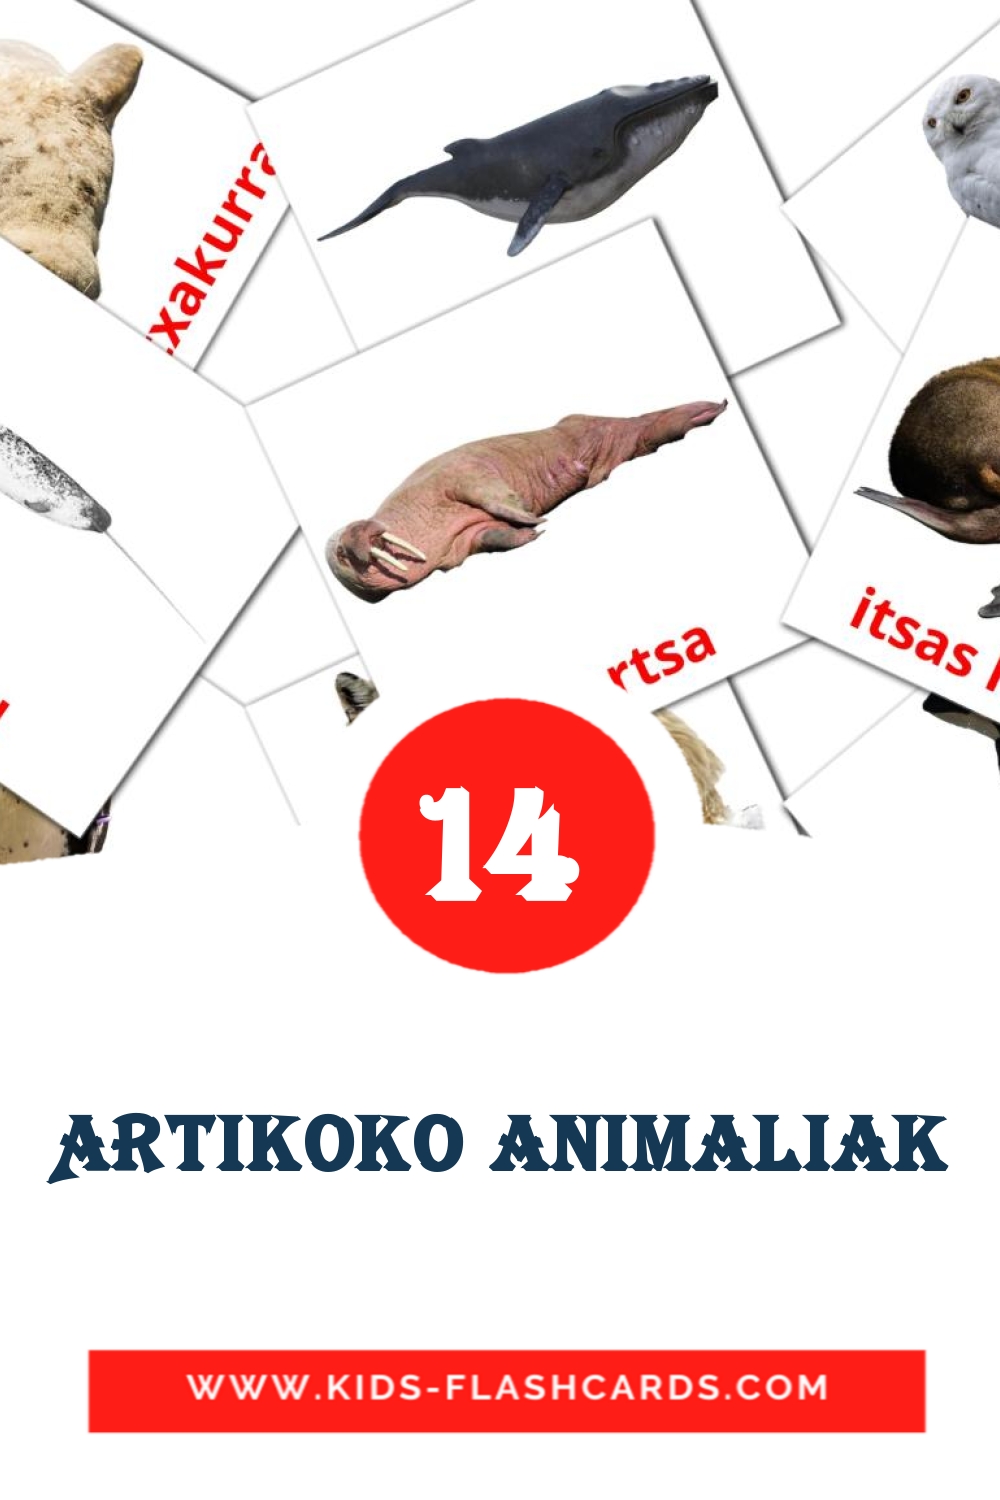 14 carte illustrate di Artikoko animaliak per la scuola materna in basco